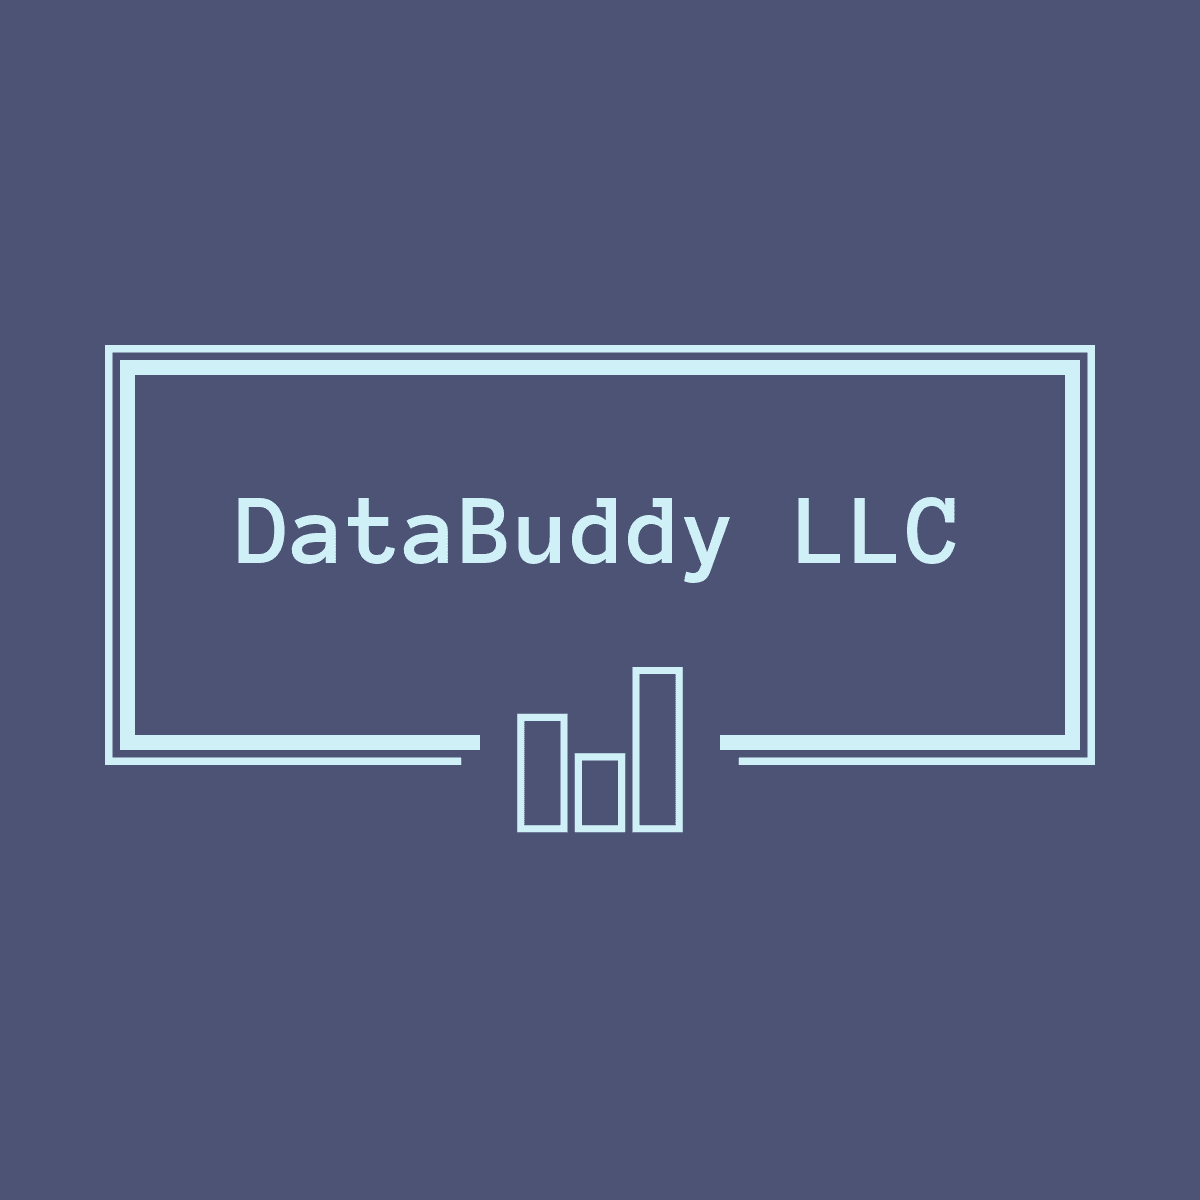 DataBuddy LLC